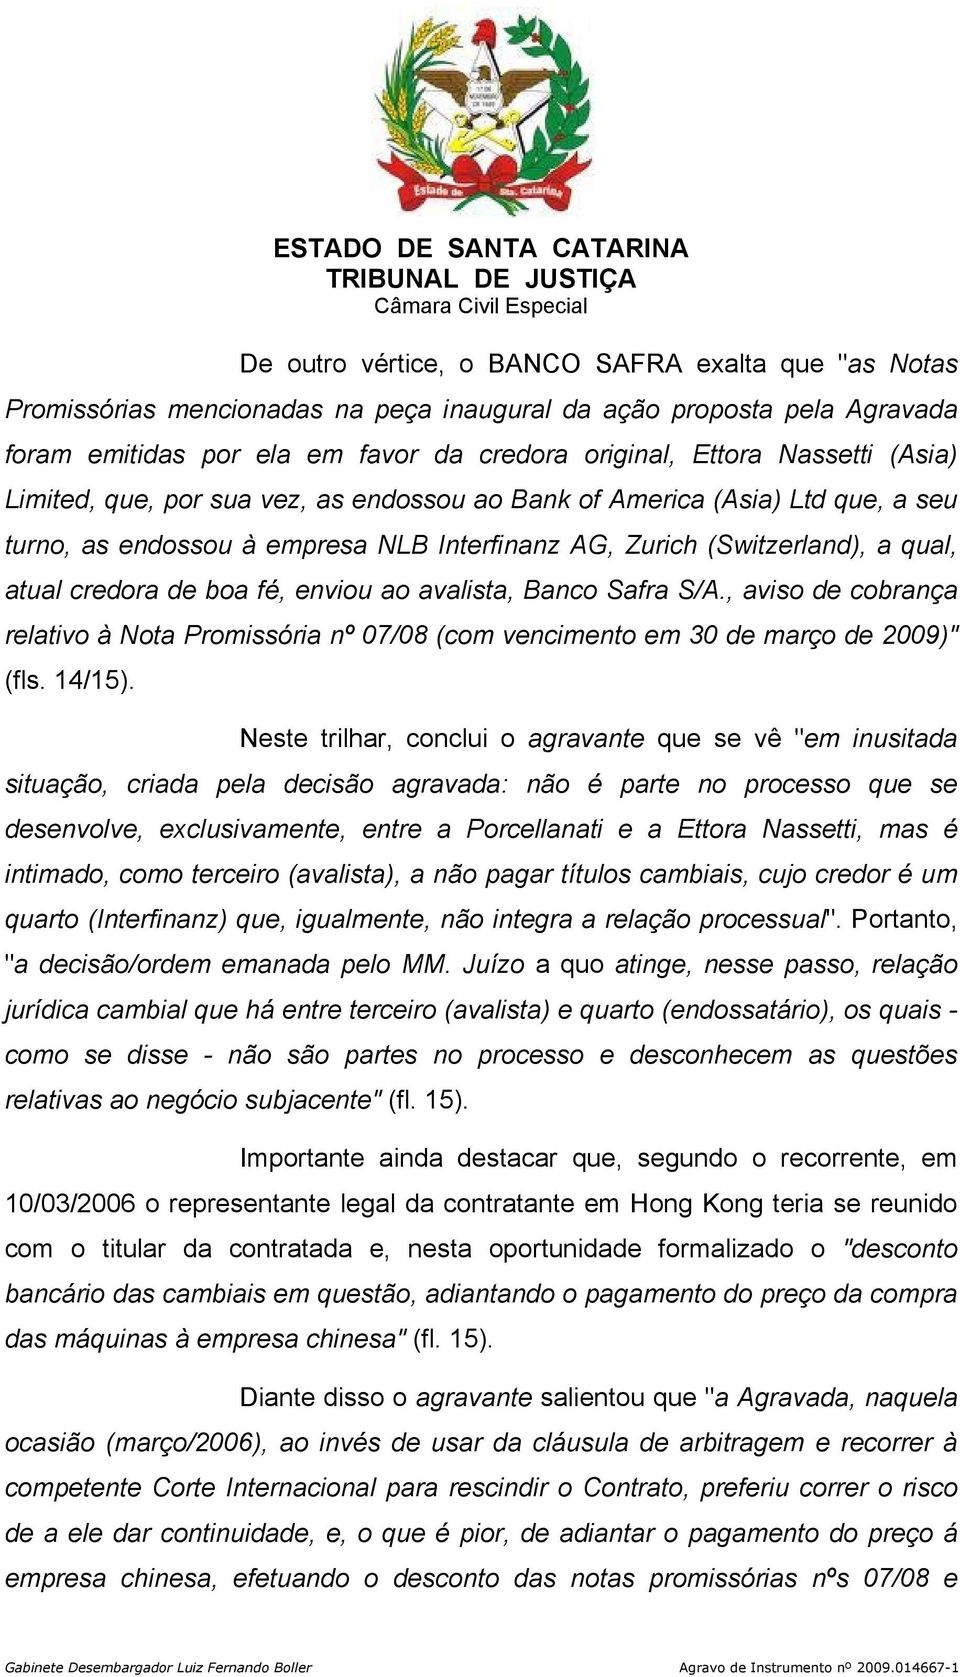 ao avalista, Banco Safra S/A., aviso de cobrança relativo à Nota Promissória nº 07/08 (com vencimento em 30 de março de 2009)" (fls. 14/15).